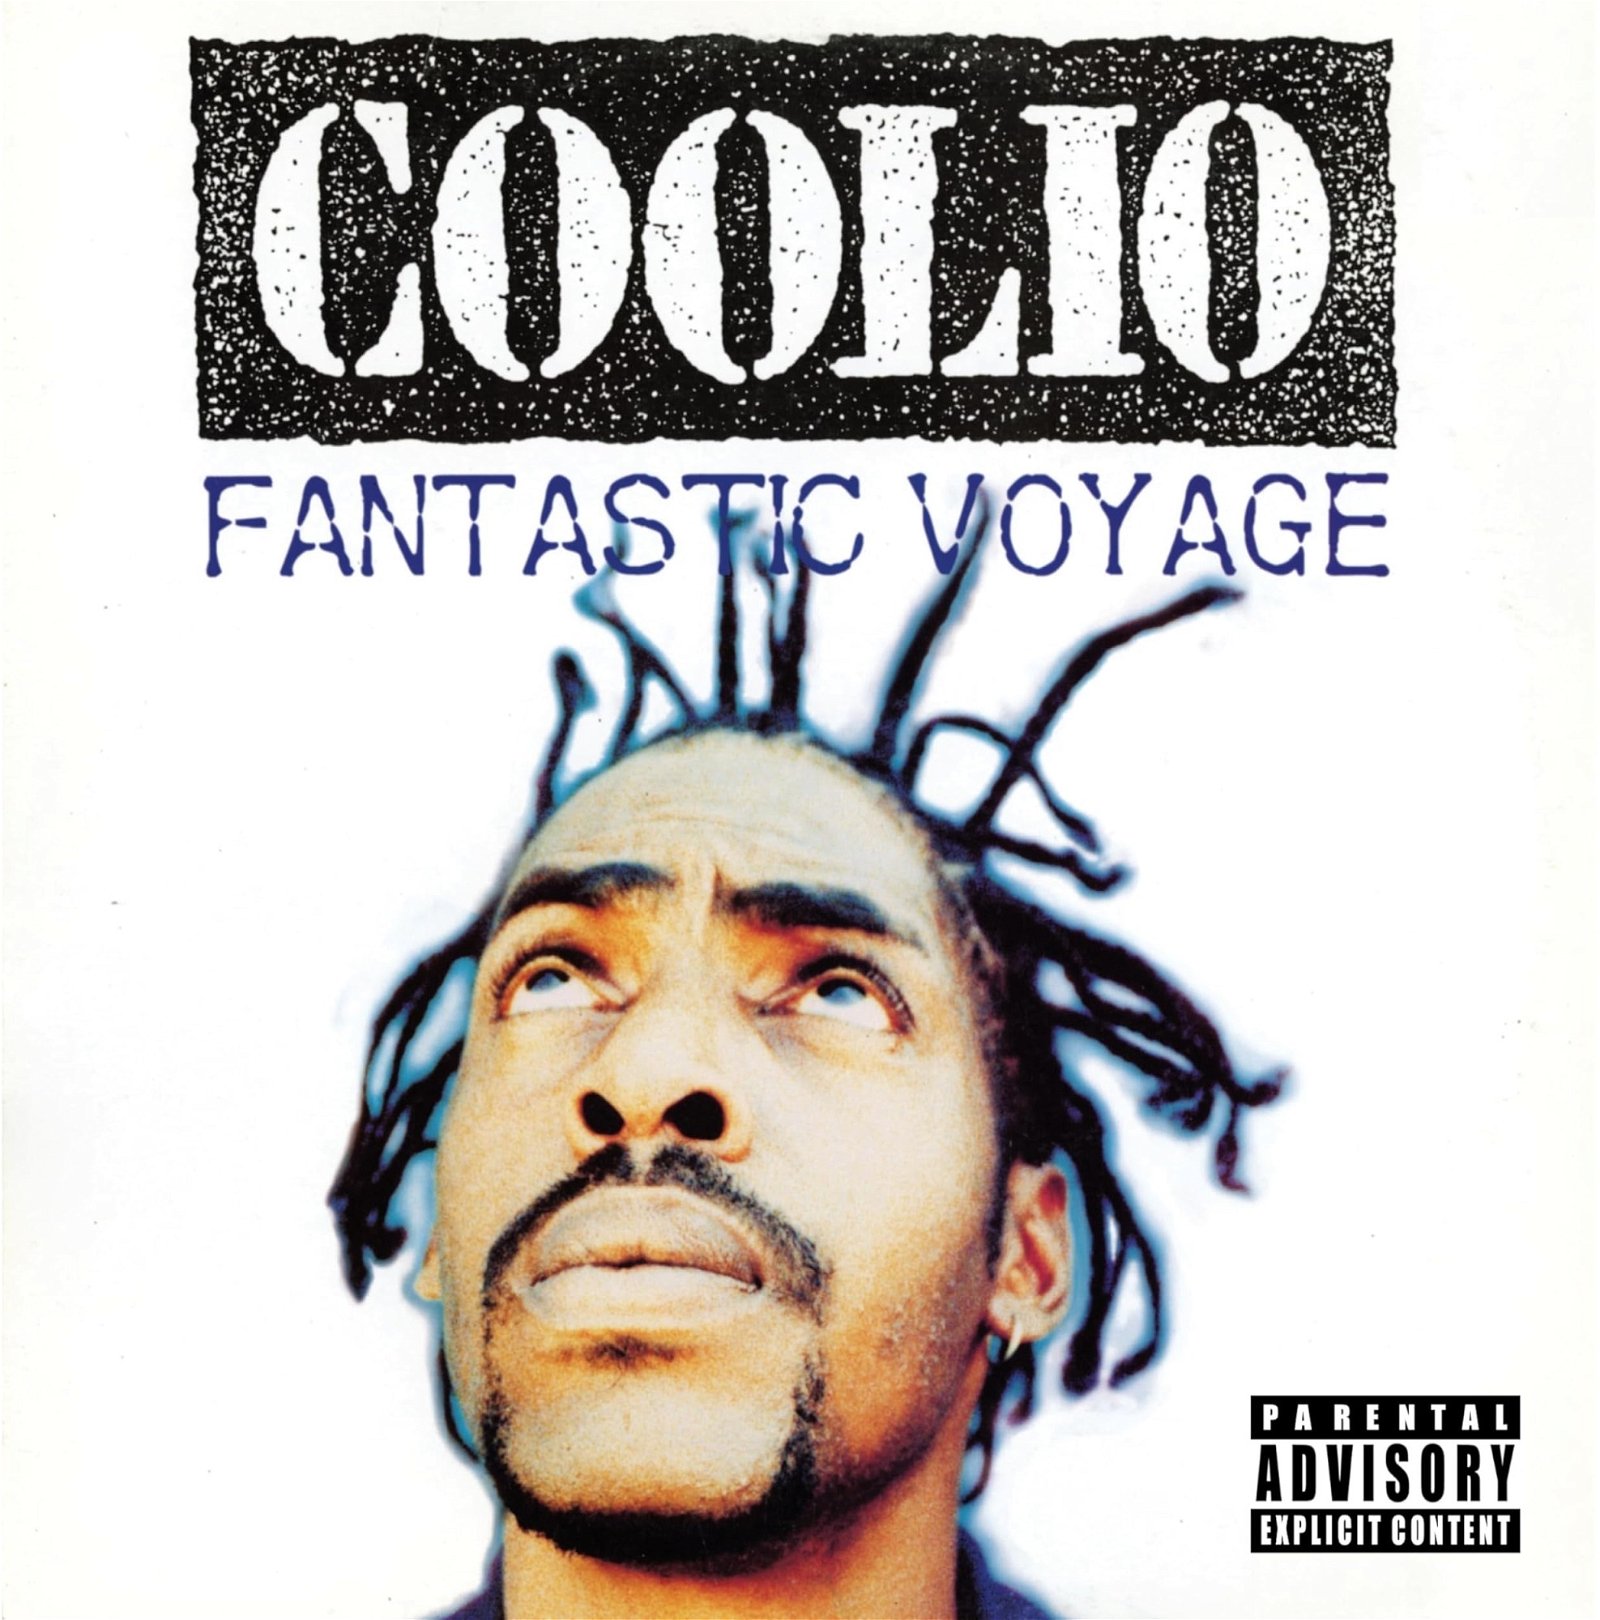 CD Shop - COOLIO 7-FANTASTIC VOYAGE